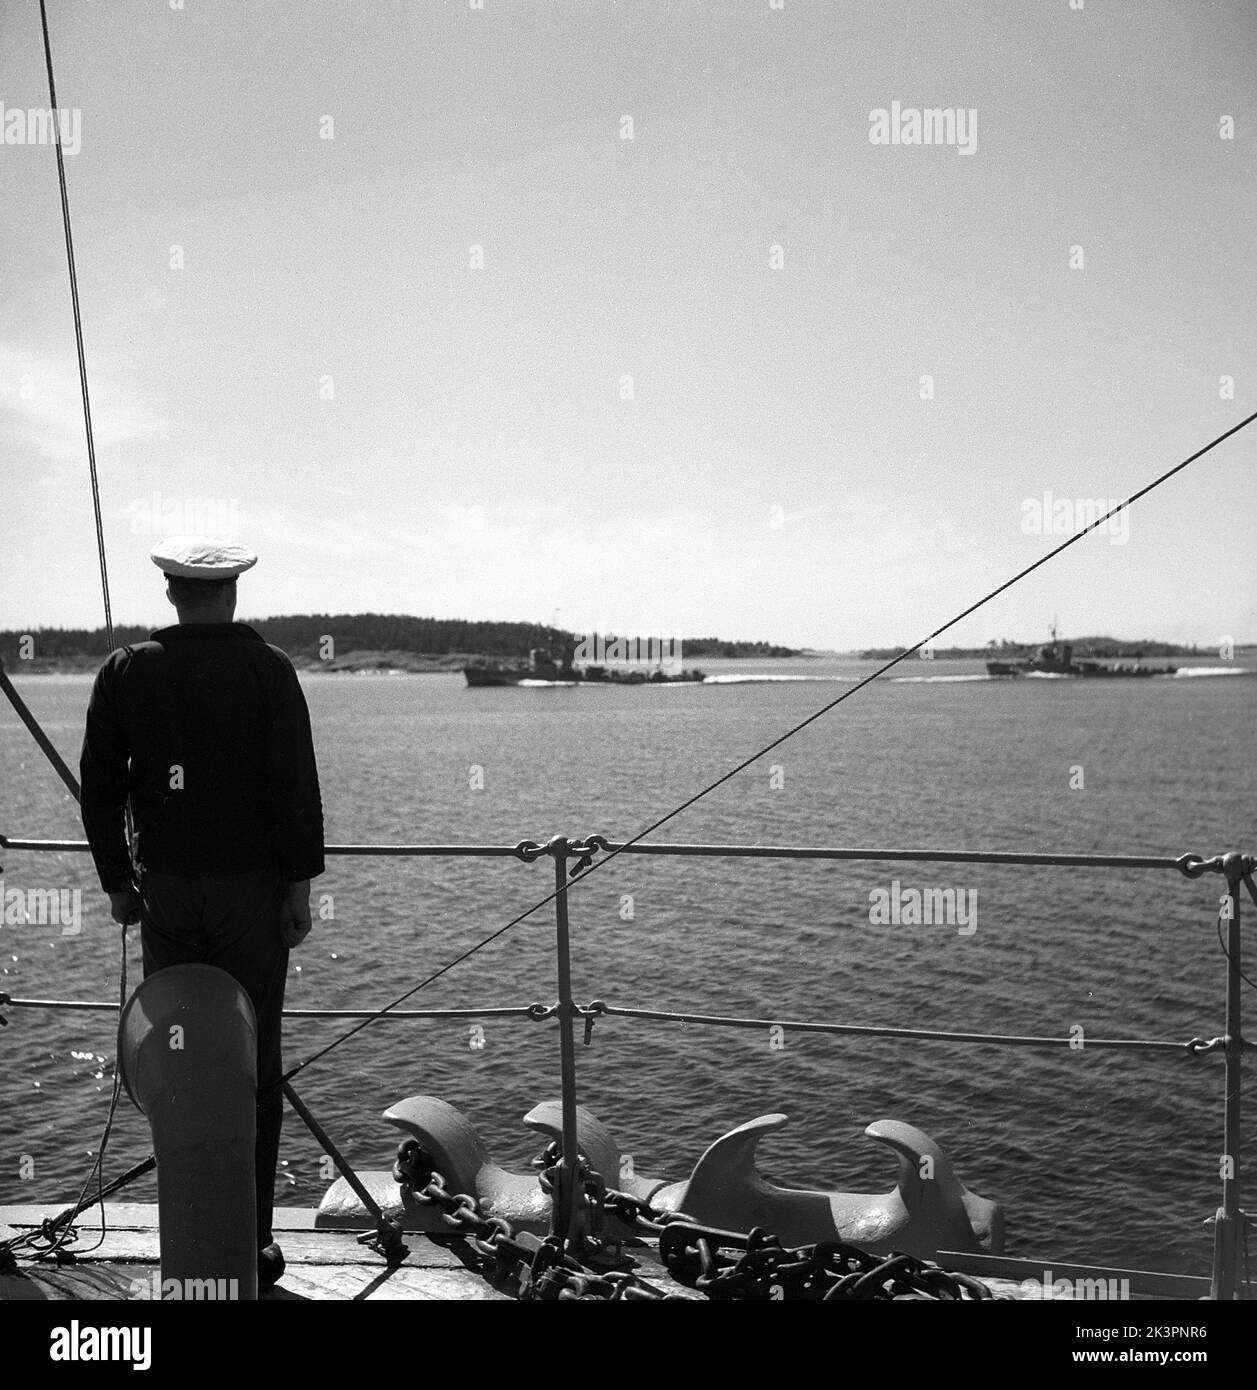 Durante la seconda guerra mondiale La nave da guerra Sverige durante gli esercizi navali in mare. Particolare di un marinaio in piedi in attenzione sul ponte con gli occhi su altre due navi da guerra svedesi che navigano sul lato. Svezia giugno 1940. Kristoffersson Ref 141 Foto Stock